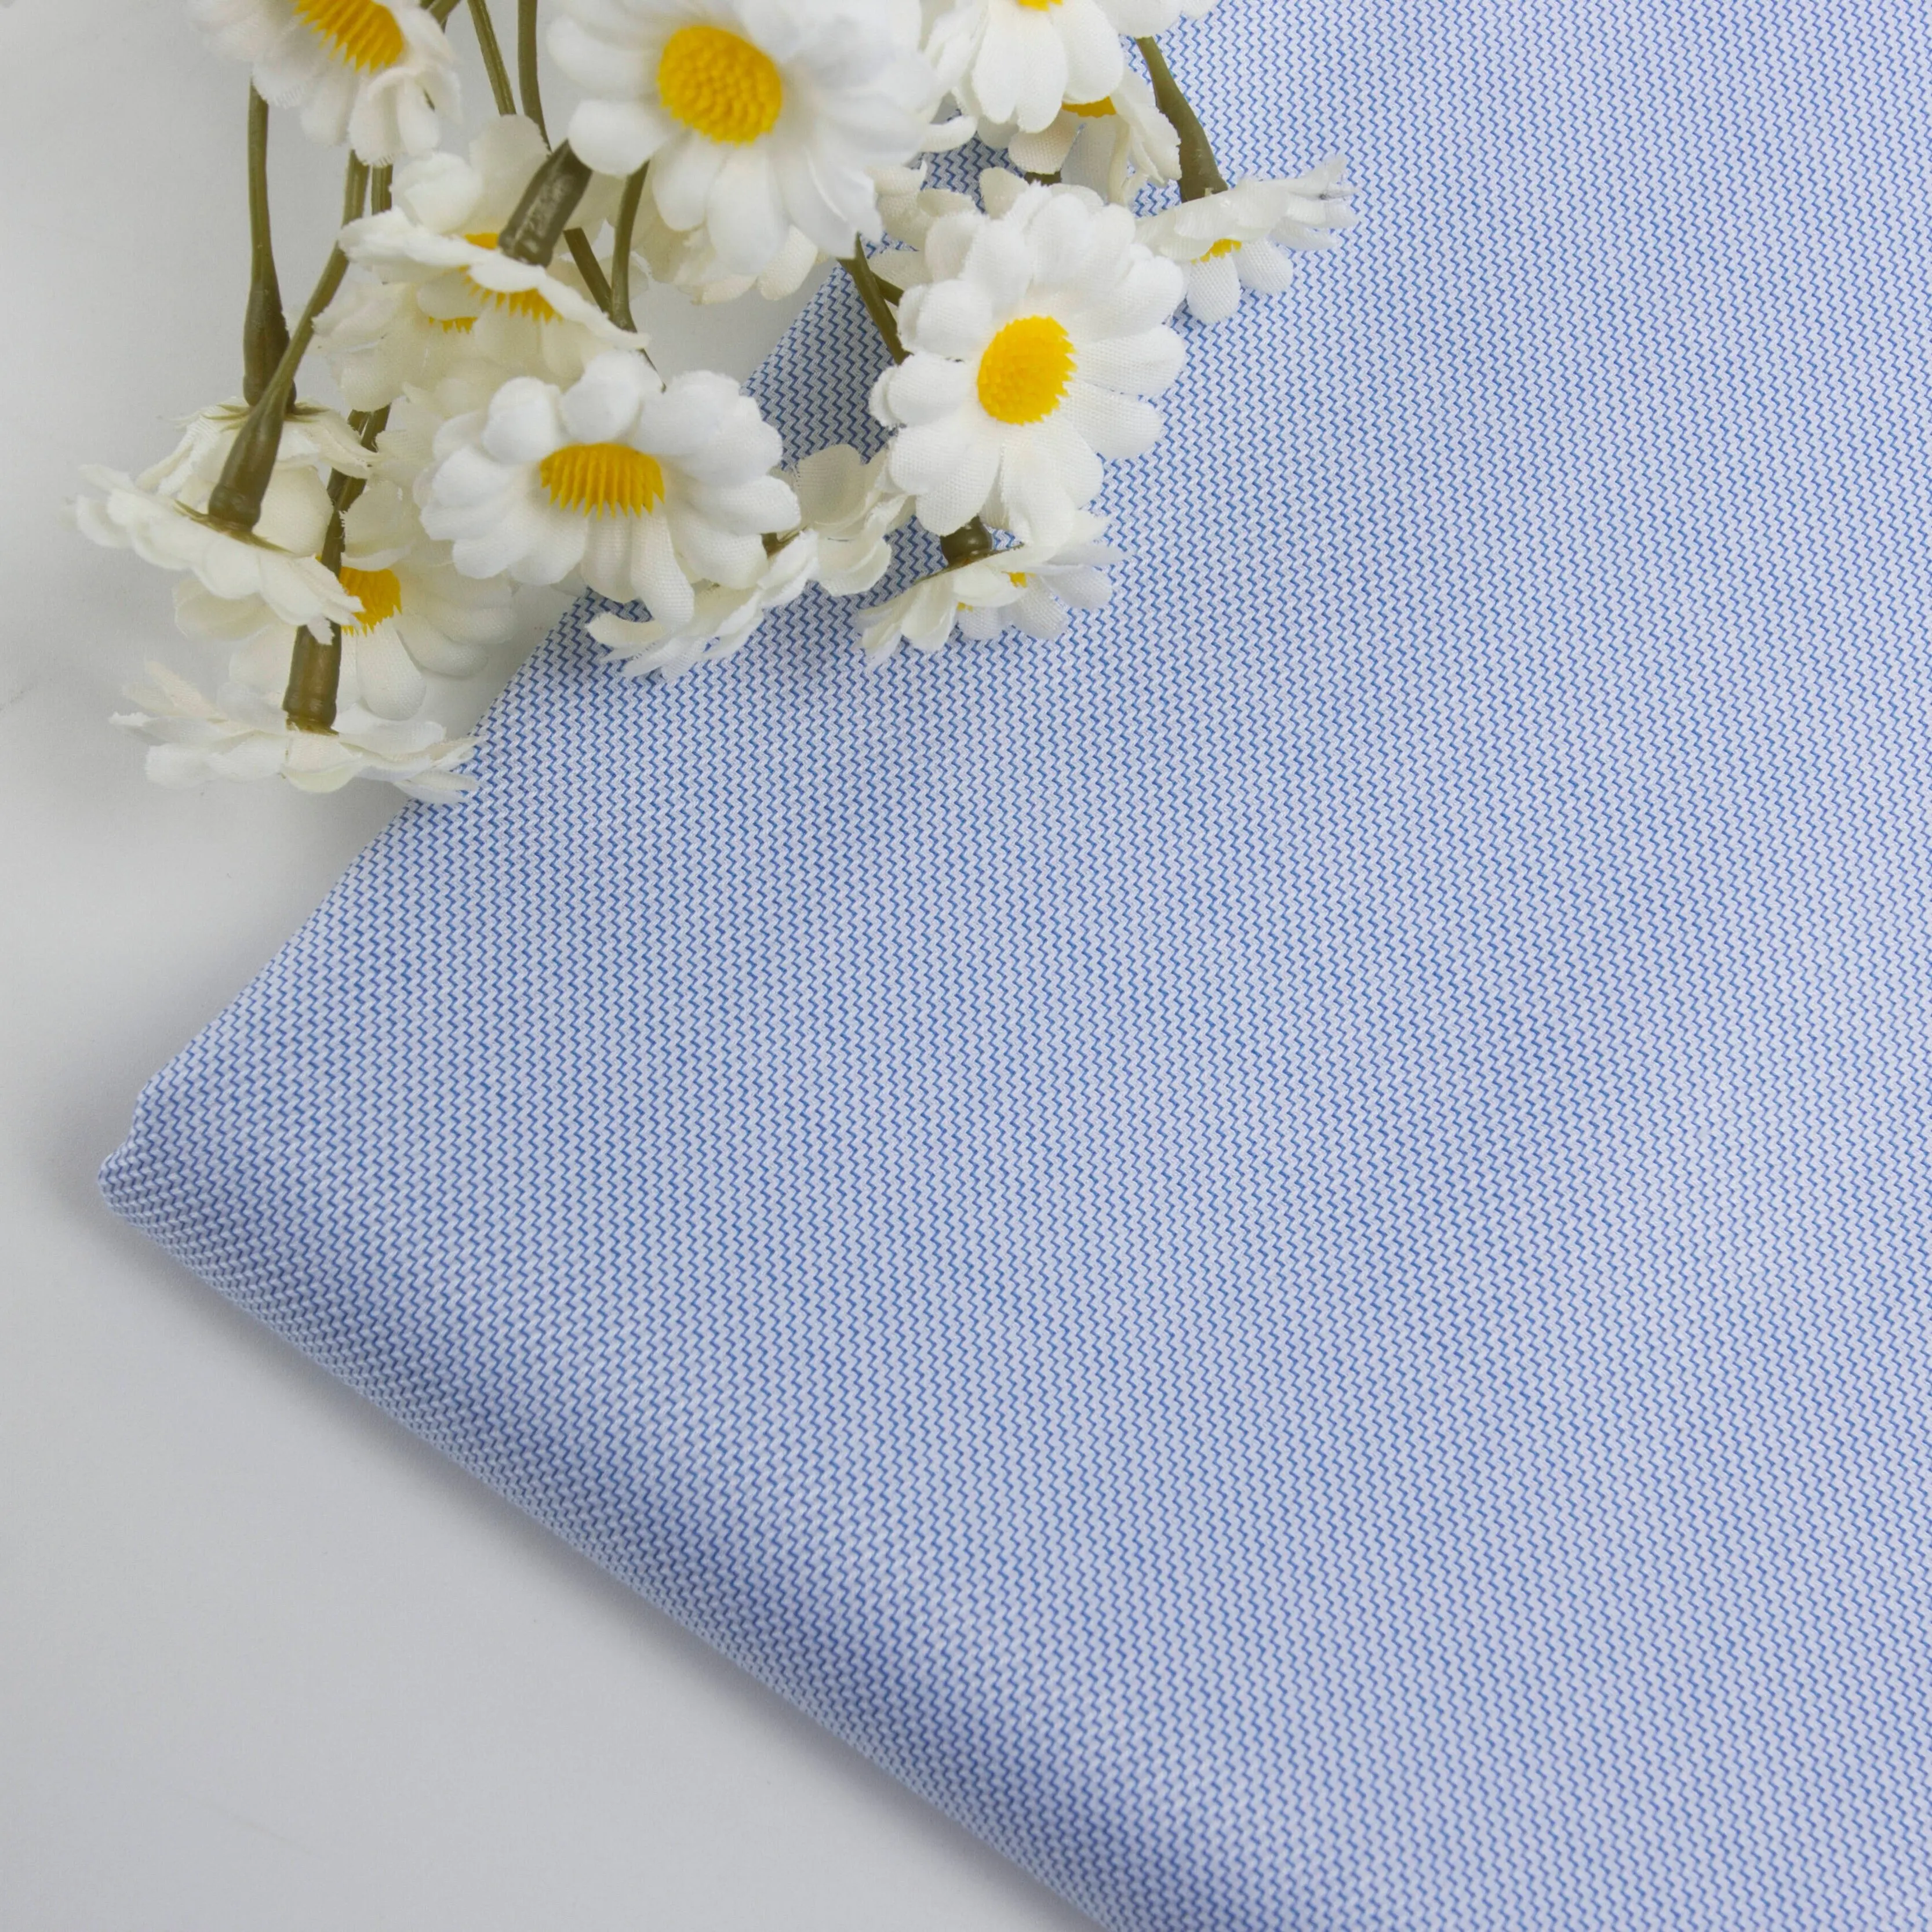 94 China textil antiarrugas azul y blanco amoníaco líquido onda 100 algodón tejido camisa tela para prendas de lujo